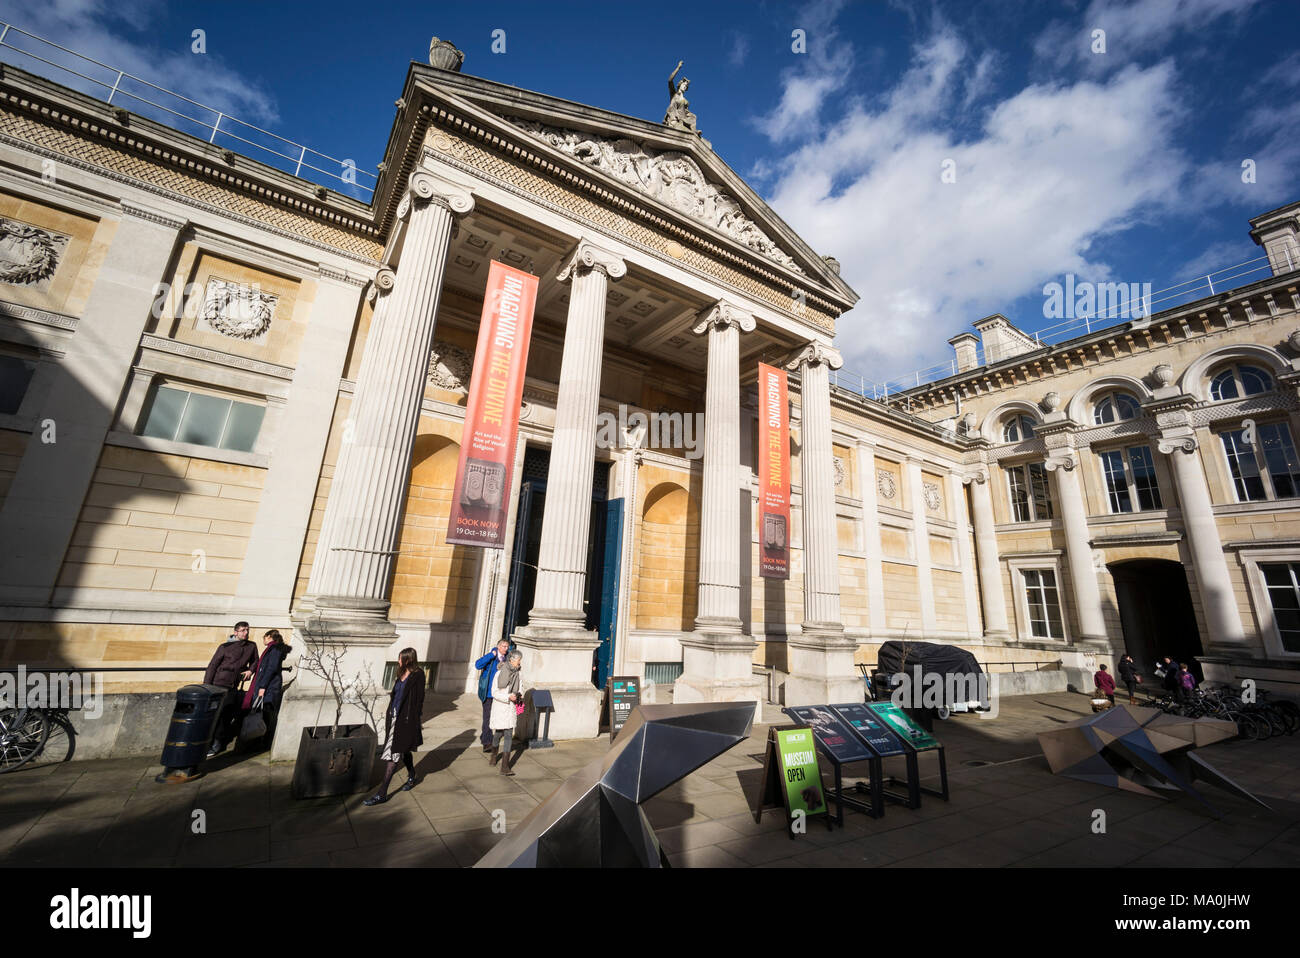 Oxford. L'Angleterre. L'Ashmolean Museum, l'entrée principale de l'extérieur. Façade néo-grec et portico par Charles Robert Cockerell construit en 1845. Banque D'Images